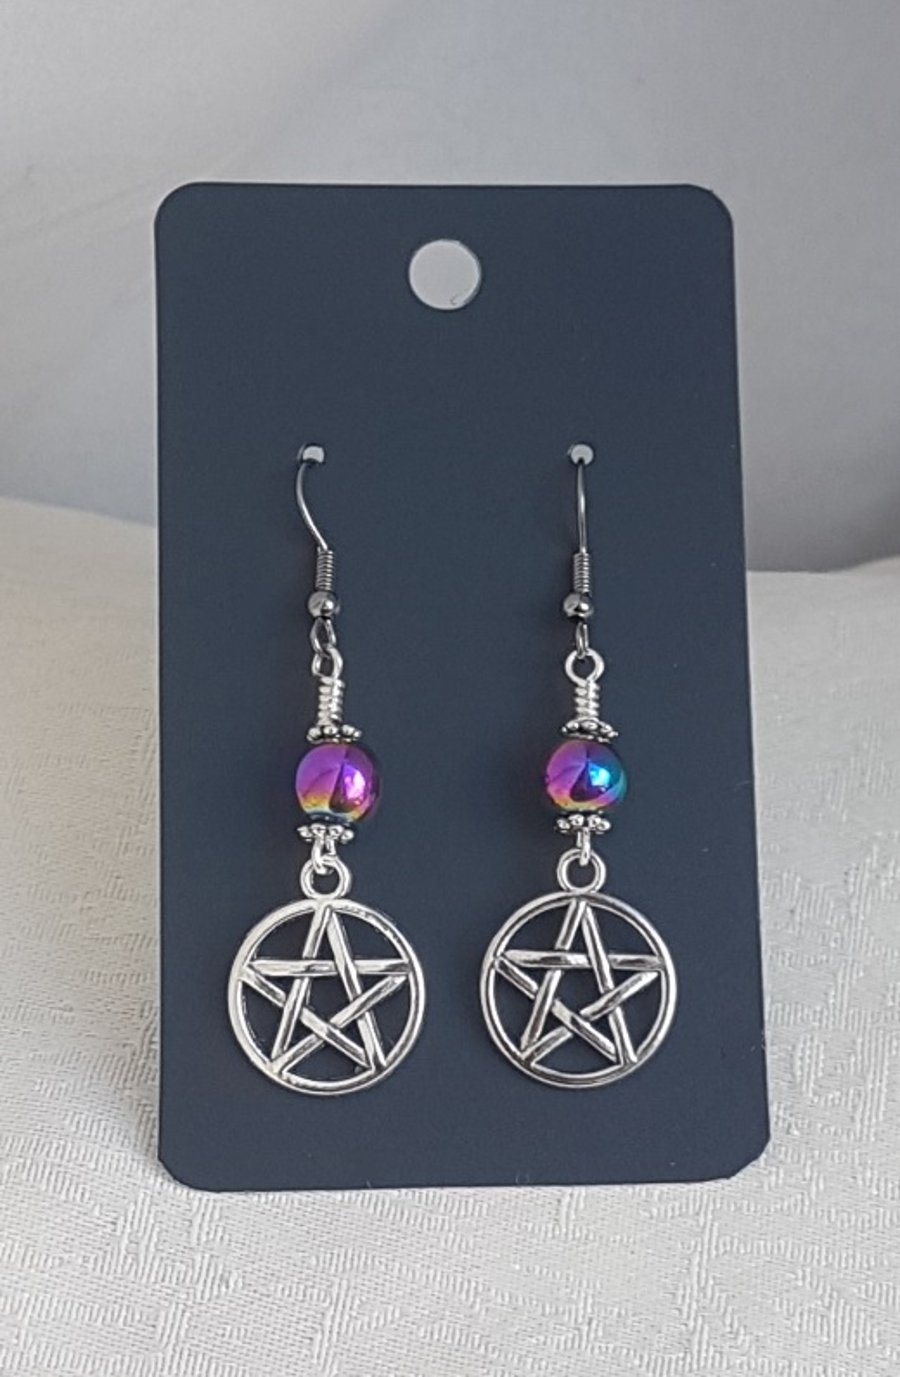 Pentacle Earrings with Rainbow Haematite Beads - Gun Metal Ear Wires